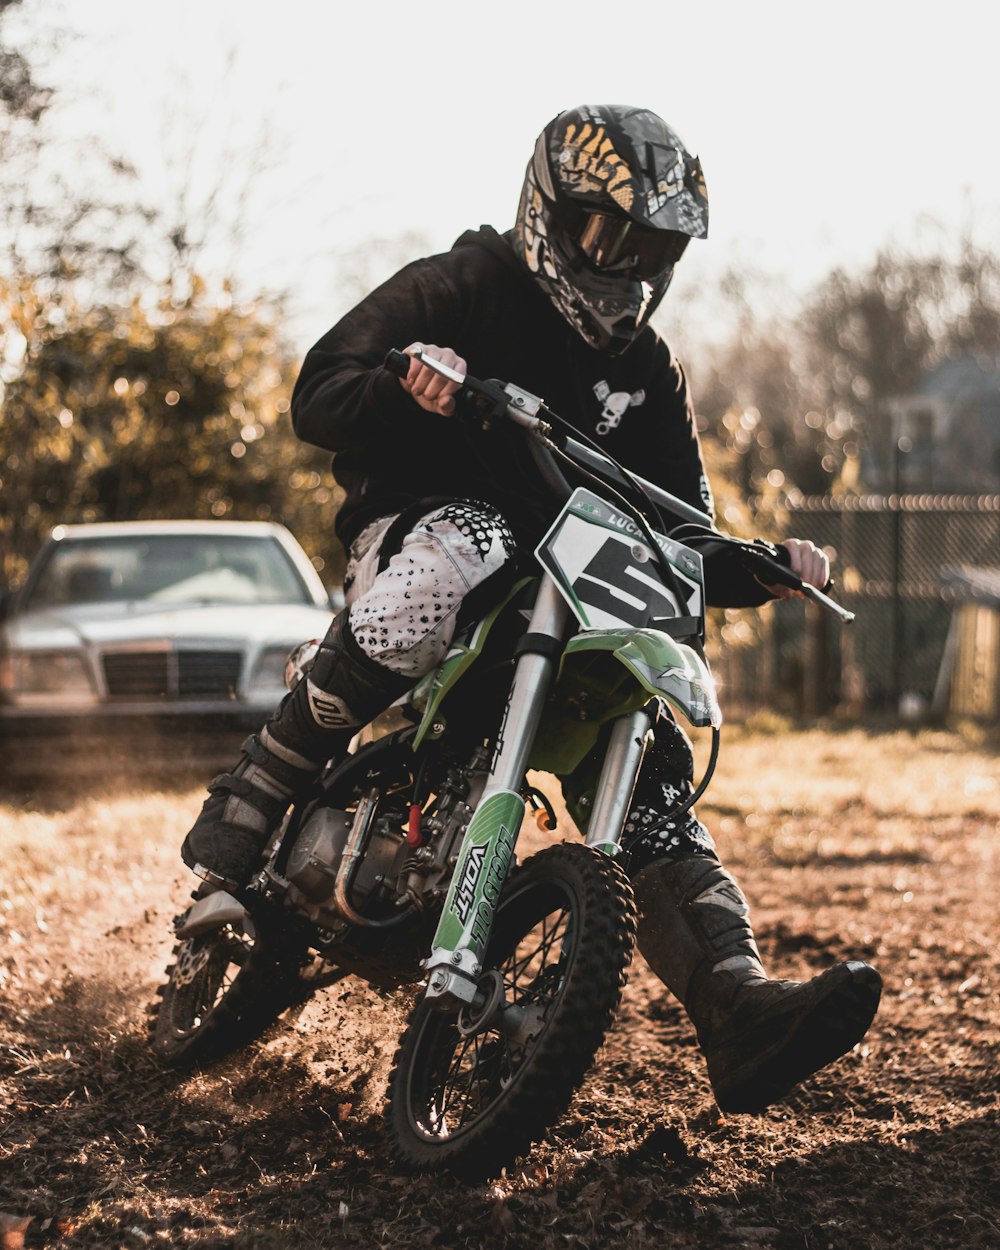 Mann fährt auf schwarzem und grünem Motocross-Dirtbike